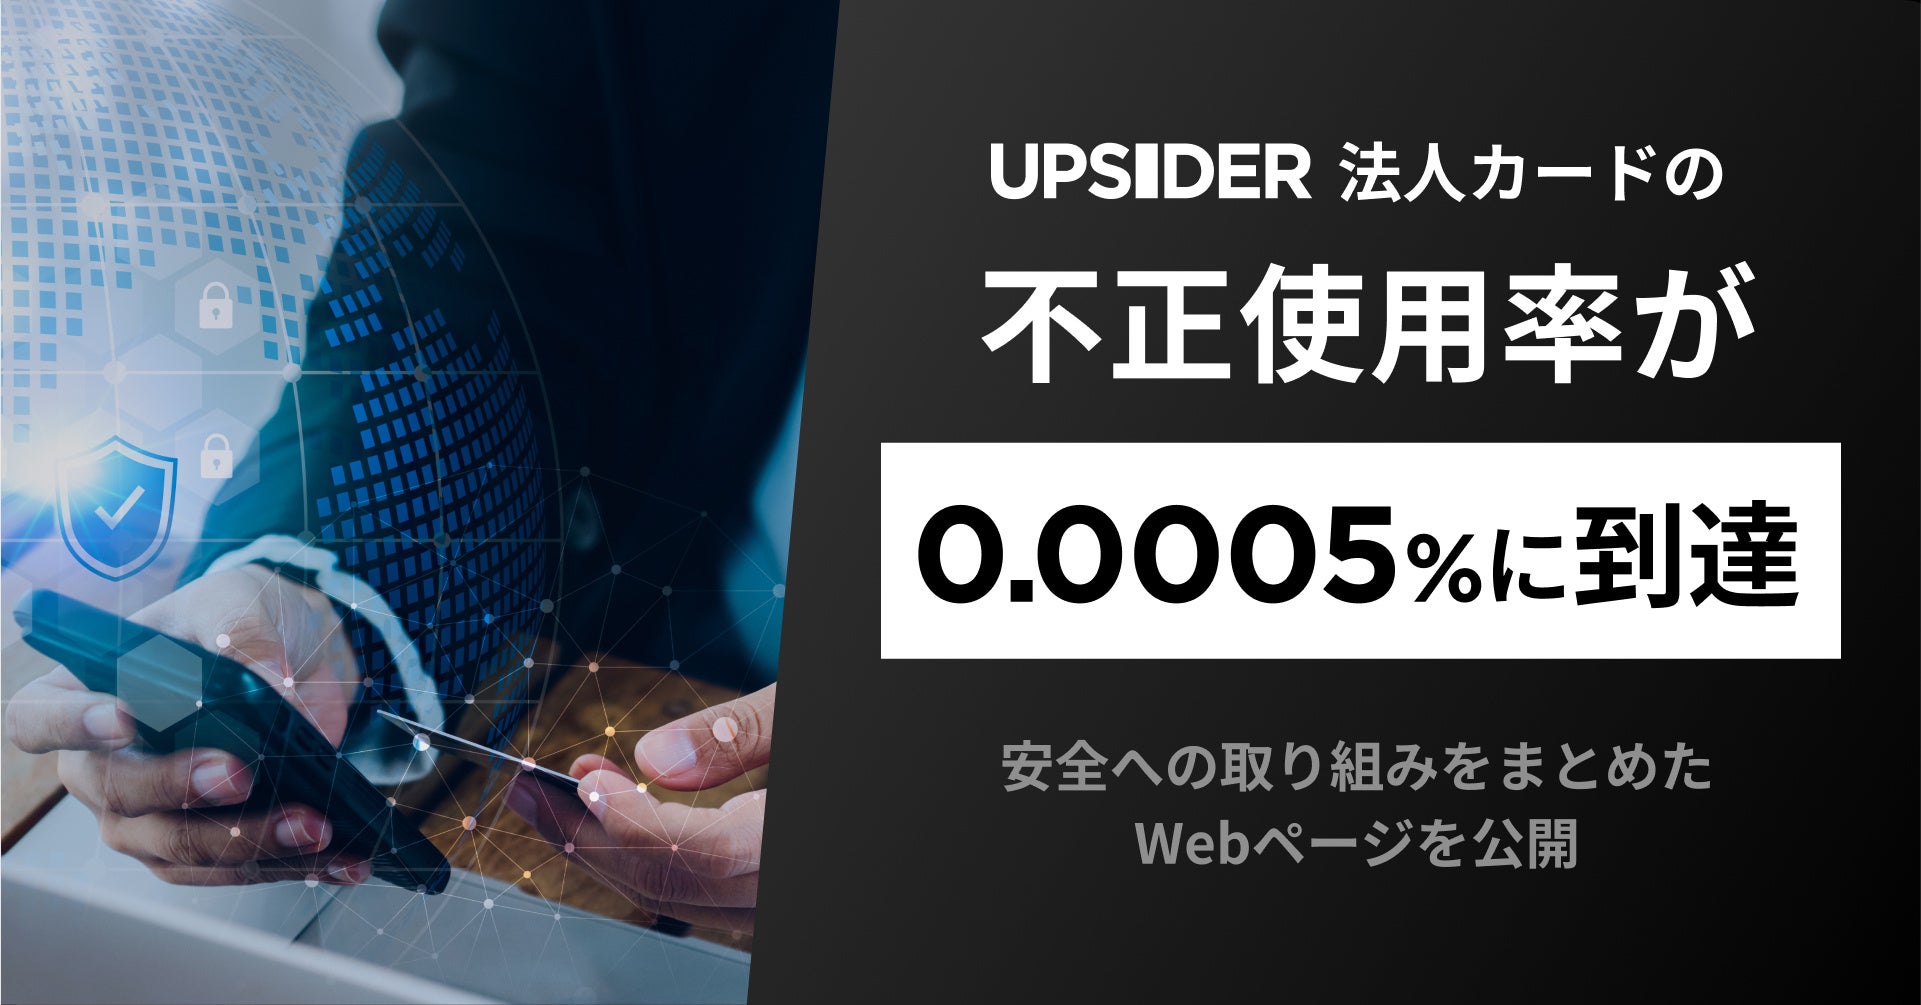 法人カード「UPSIDER」、不正使用率0.0005%に到達。クレジットカード不正使用率の100分の1以下の水準へ